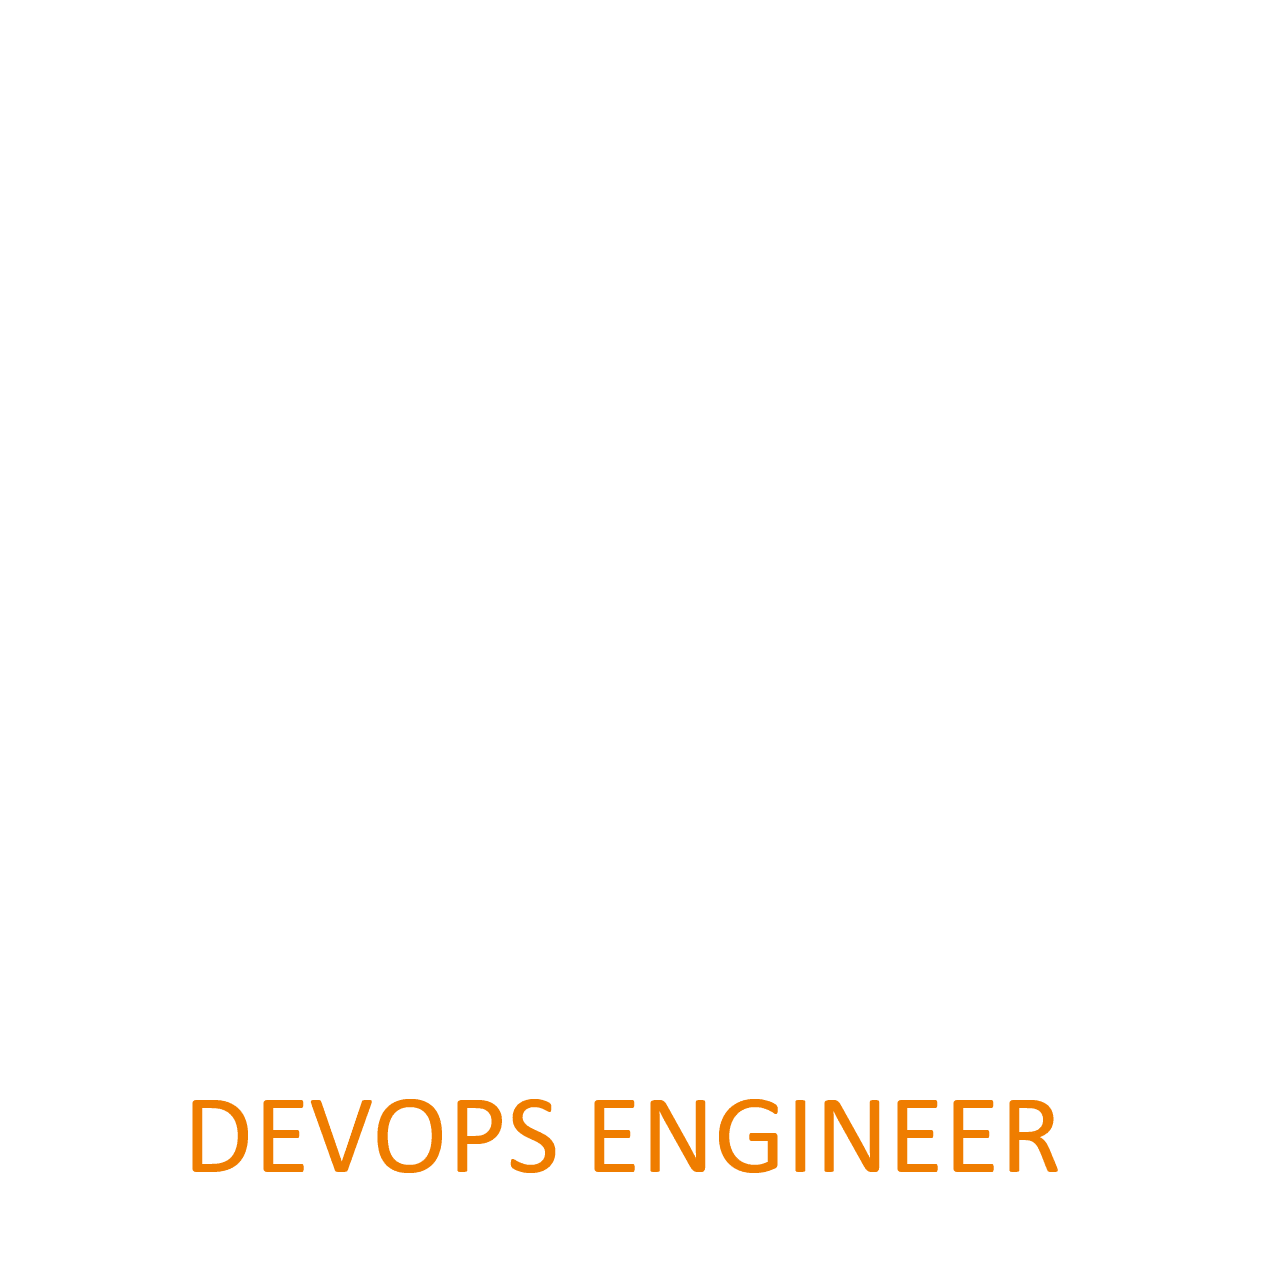 DevOps Engineer